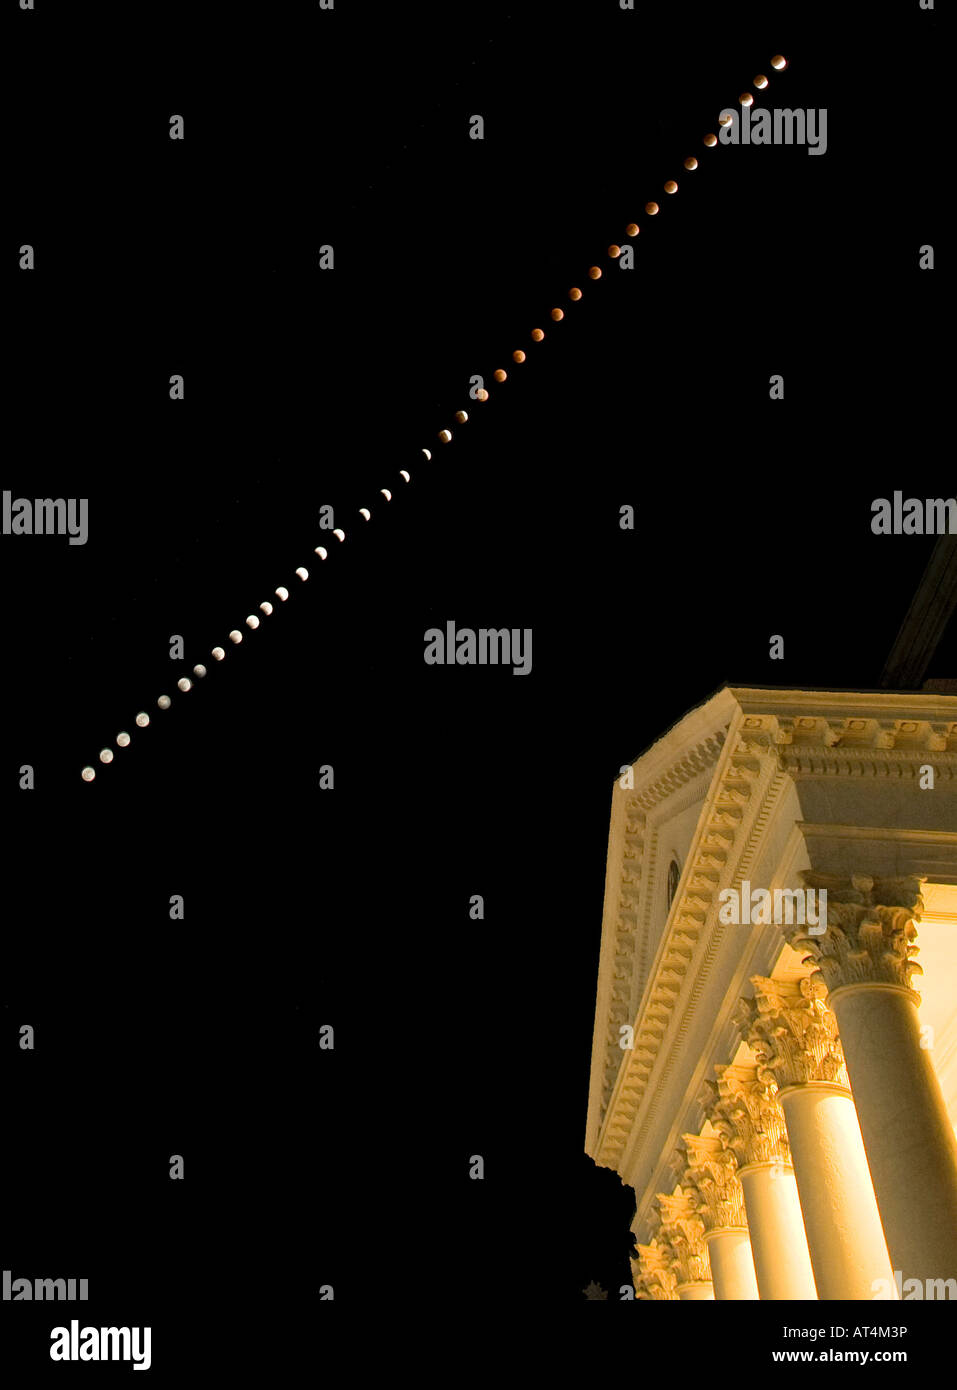 Un eclissi lunare totale era visibile oltre la rotonda presso l'Università della Virginia di Charlottesville in Virginia nel febbraio 20 2008 Foto illustrazione è stata creata a partire da un materiale composito di 39 fotografie scattate circa in intervalli di 5 minuti da una Canon EOS 1D Mark III fotocamera digitale con Canon EF 16 35mm f 2 8L OBIETTIVO Foto Stock